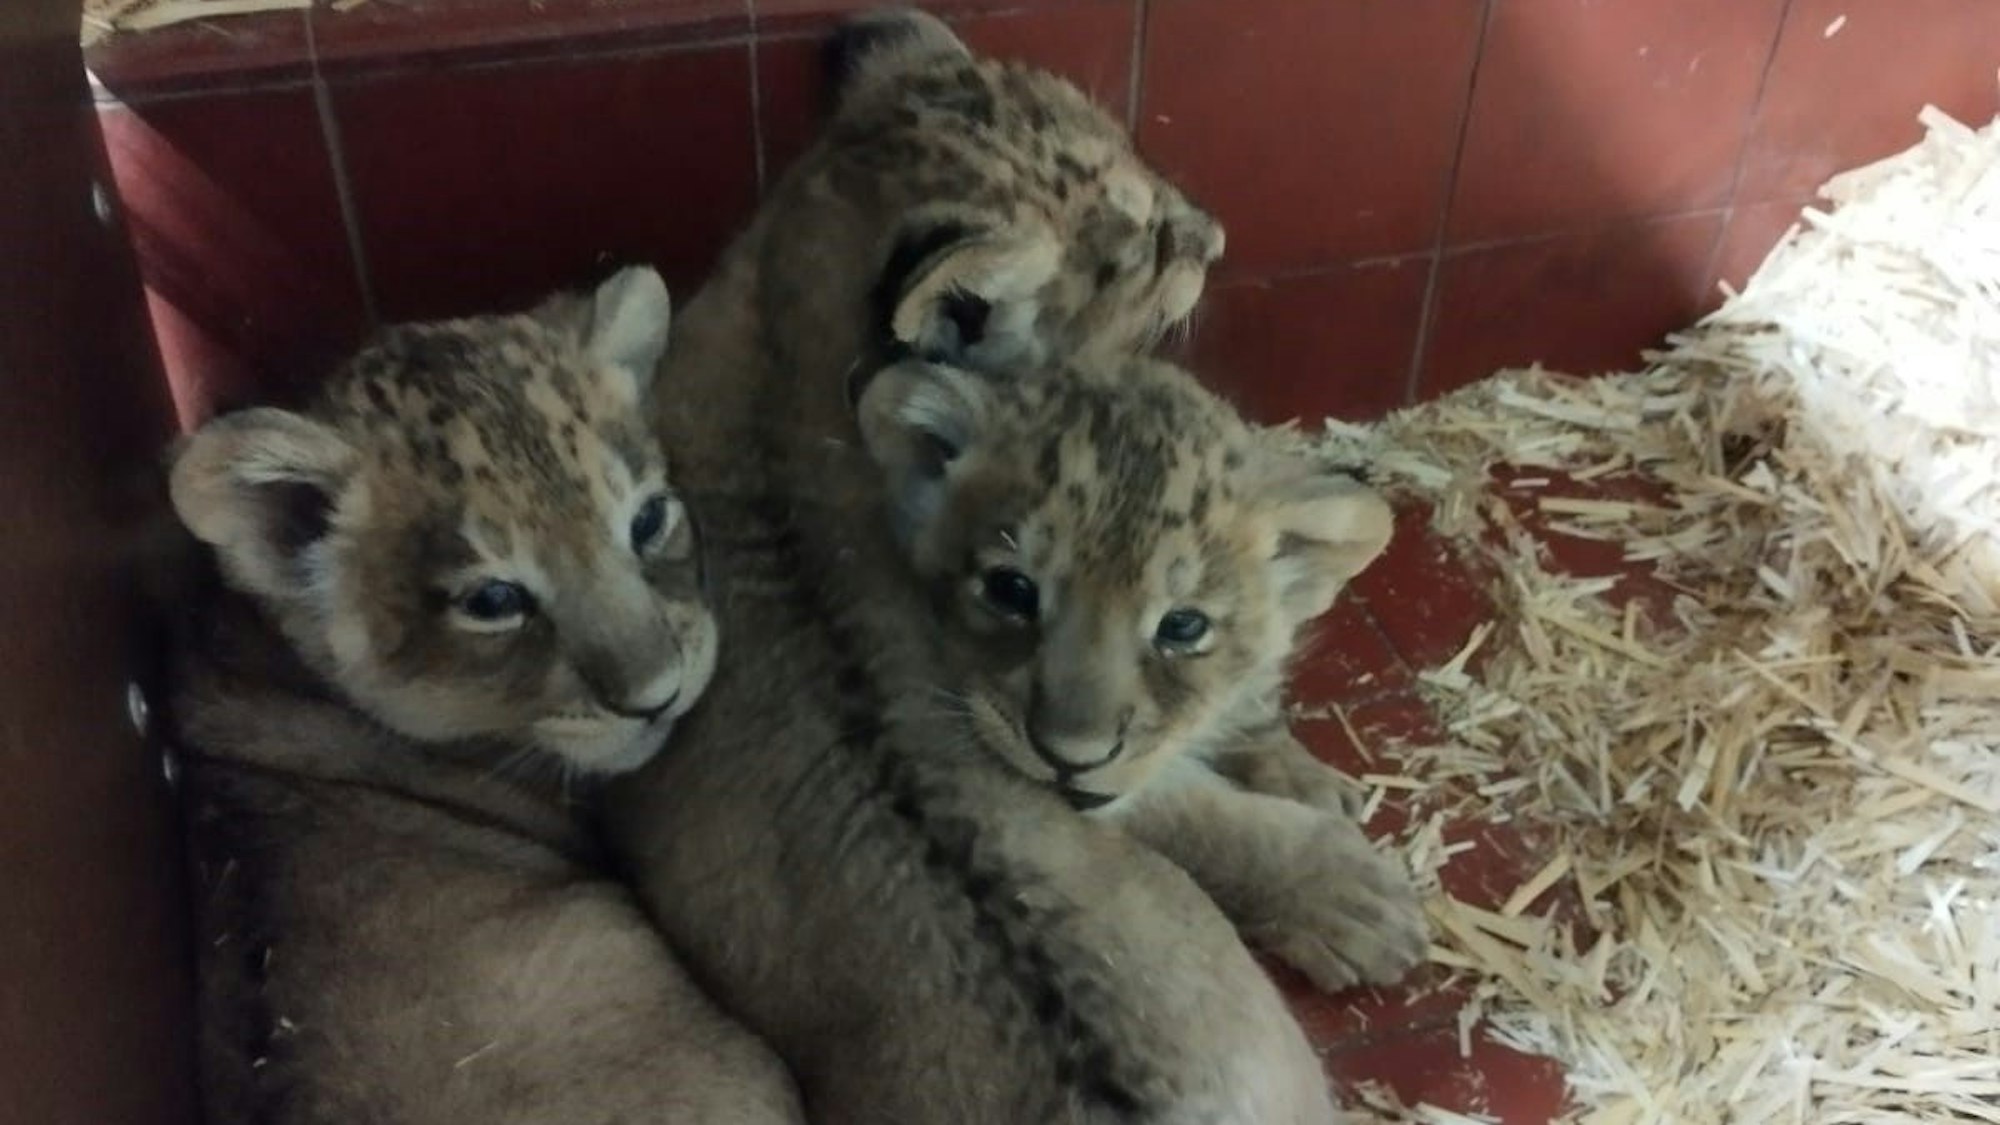 Schon ganz schön groß geworden sind die drei jungen Asiatische Löwen im Kölner Kölner Zoo